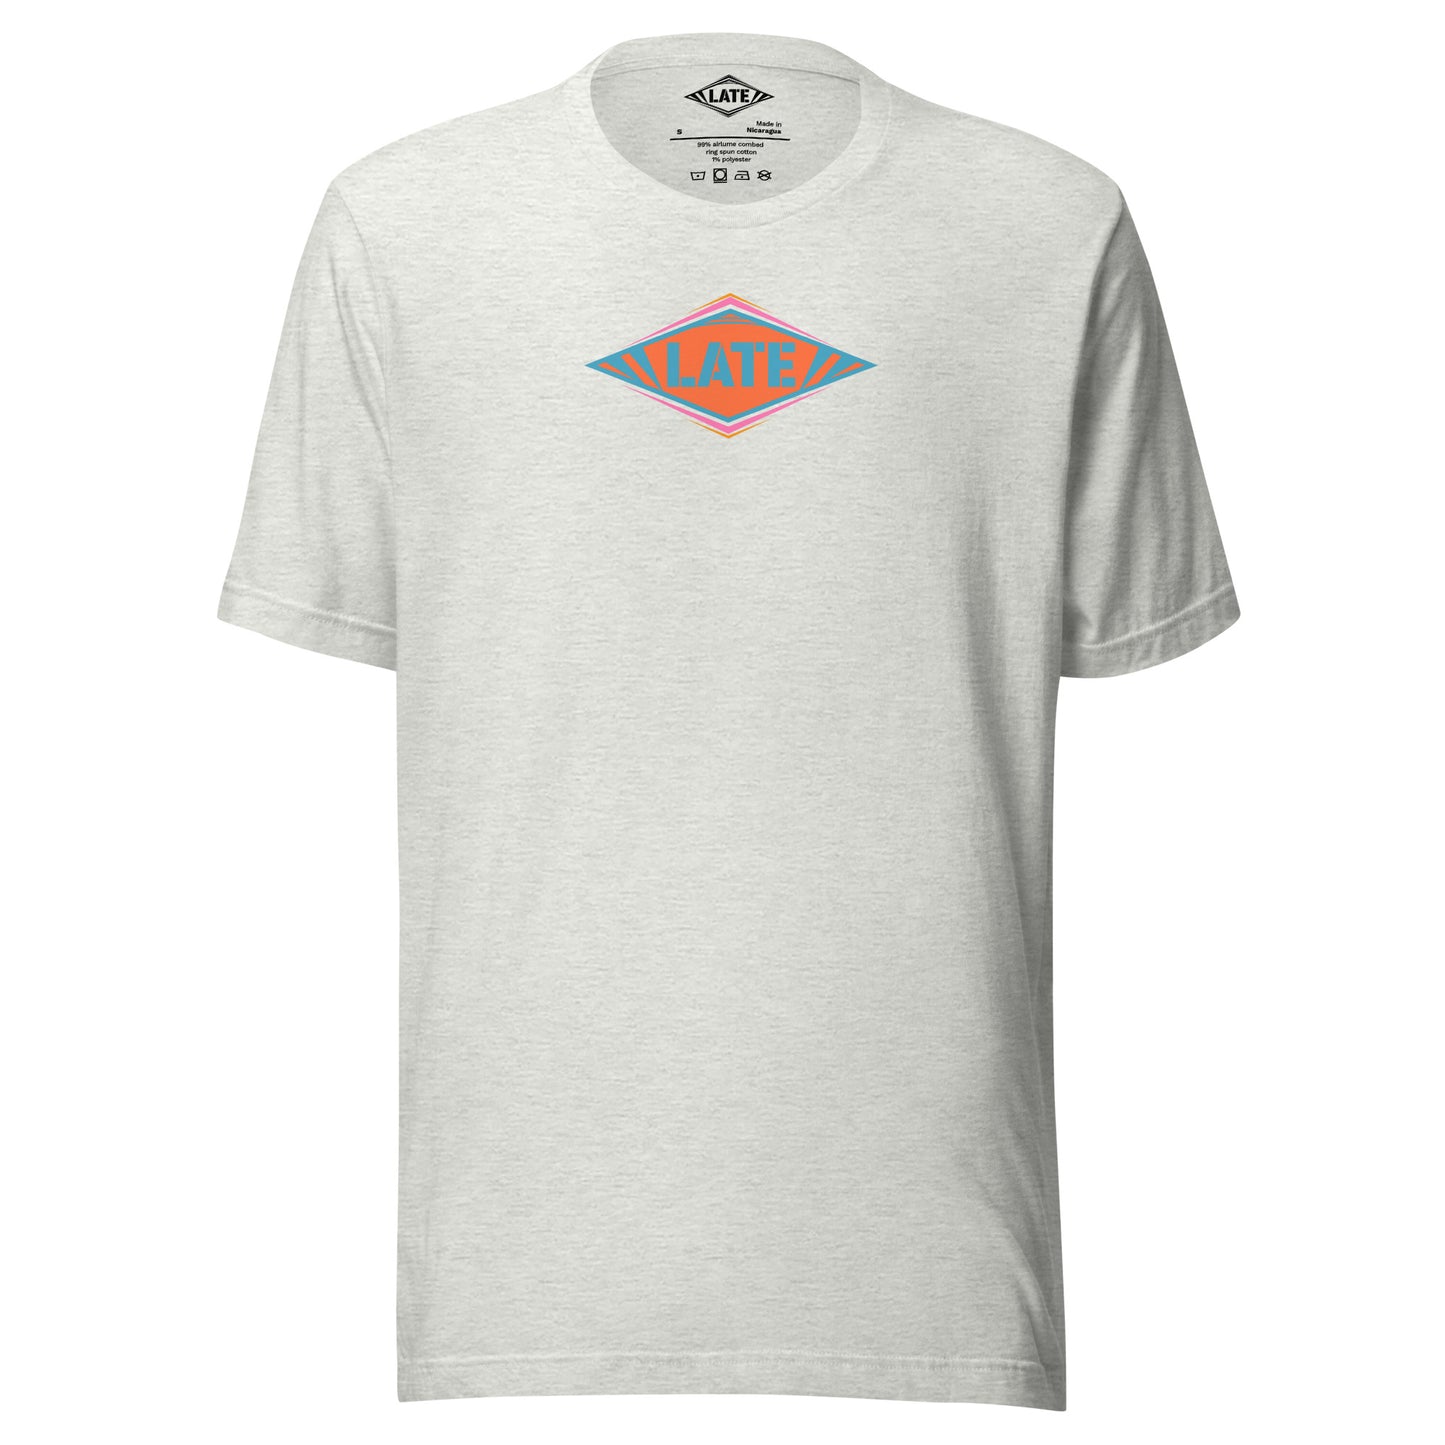 T-Shirt skateboard logo Late coloré bleu orange et violet, t-shirt unisex couleur gris